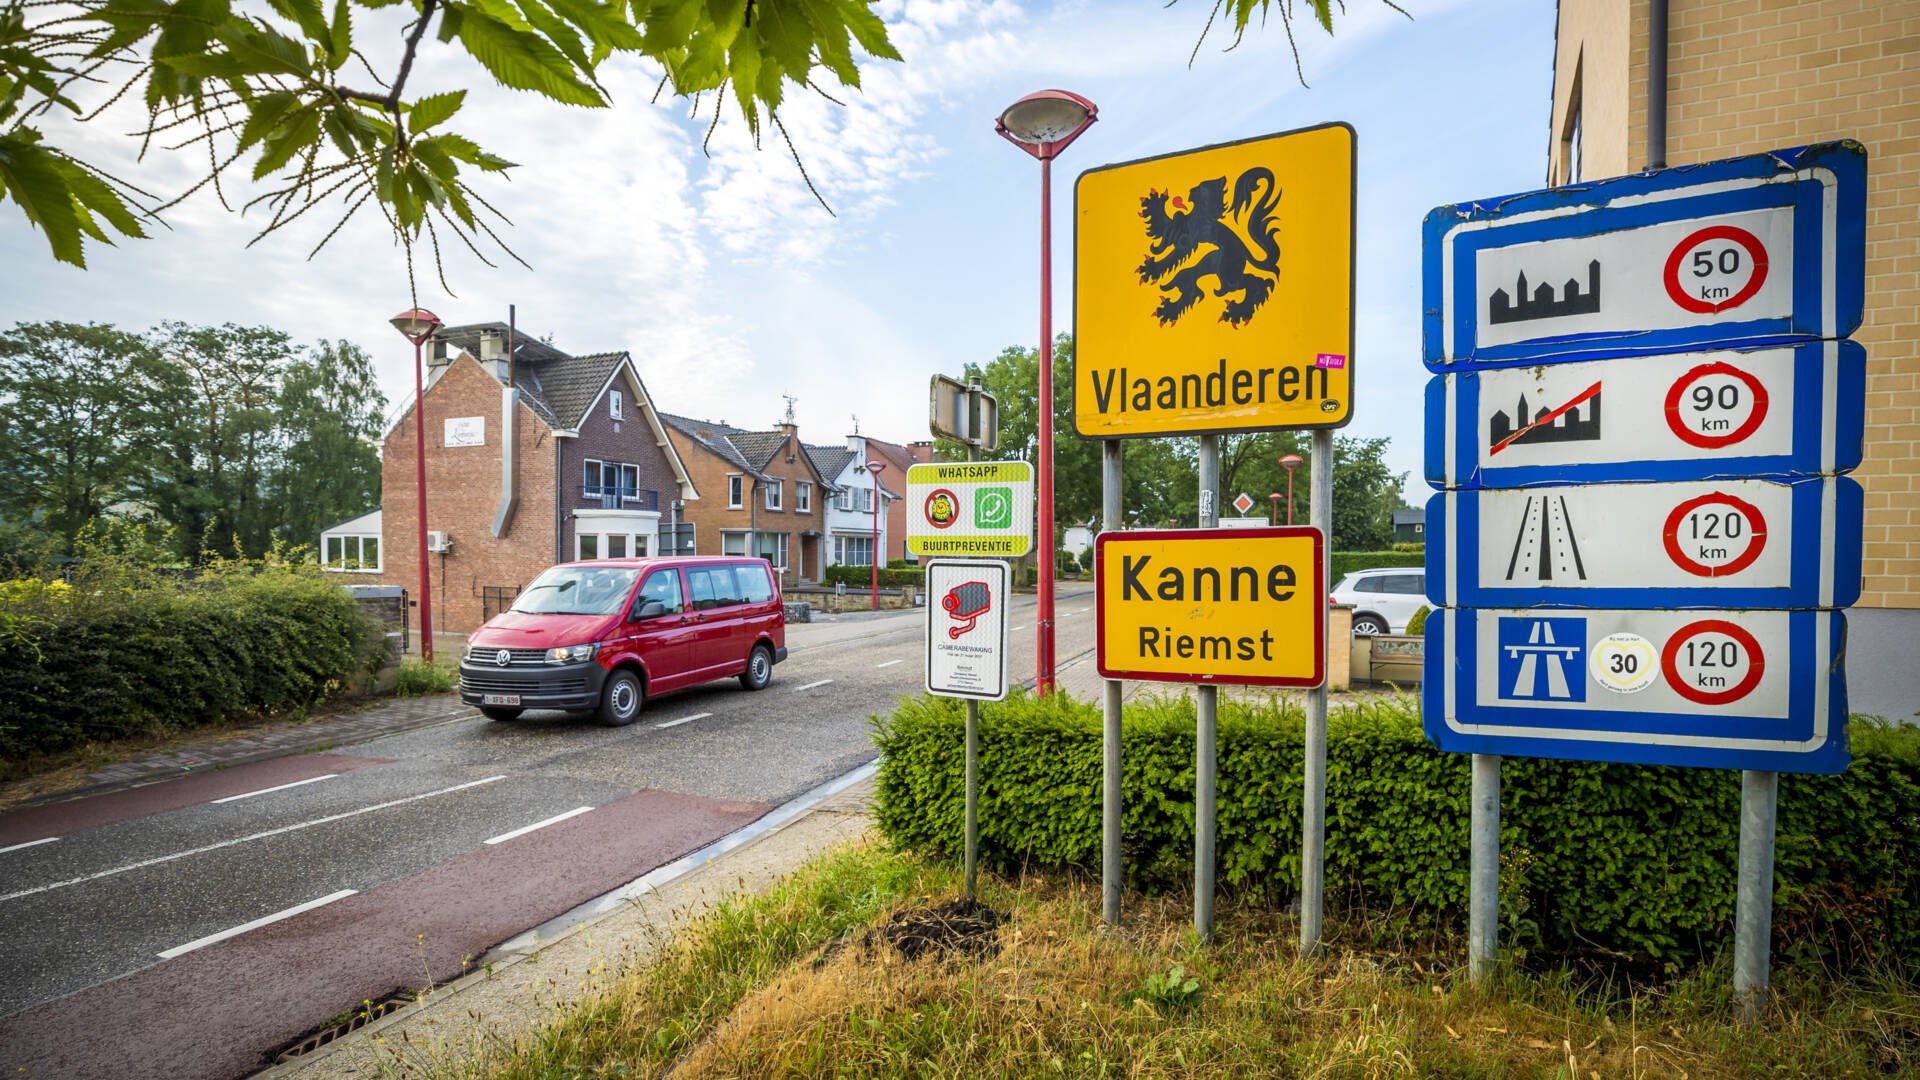 الحكومتان الهولندية والبلجيكية: لا تعبروا الحدود إلا للأمر الضروري